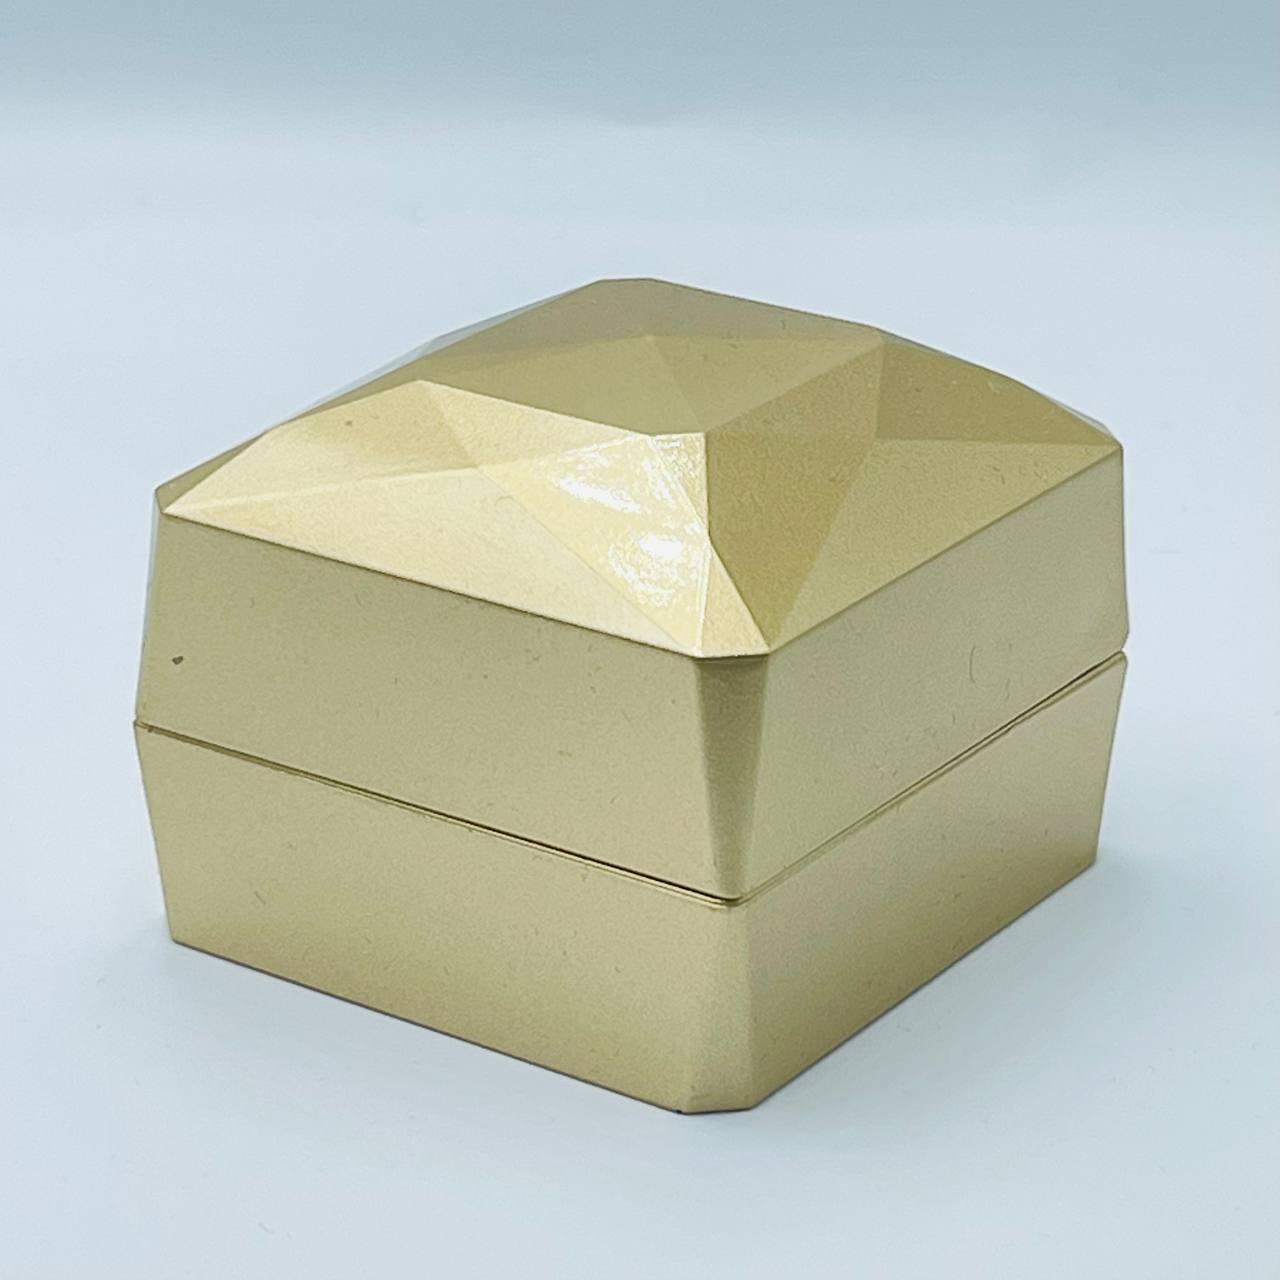 Ювелирная коробочка золотая с лед подсветкой 19375-40